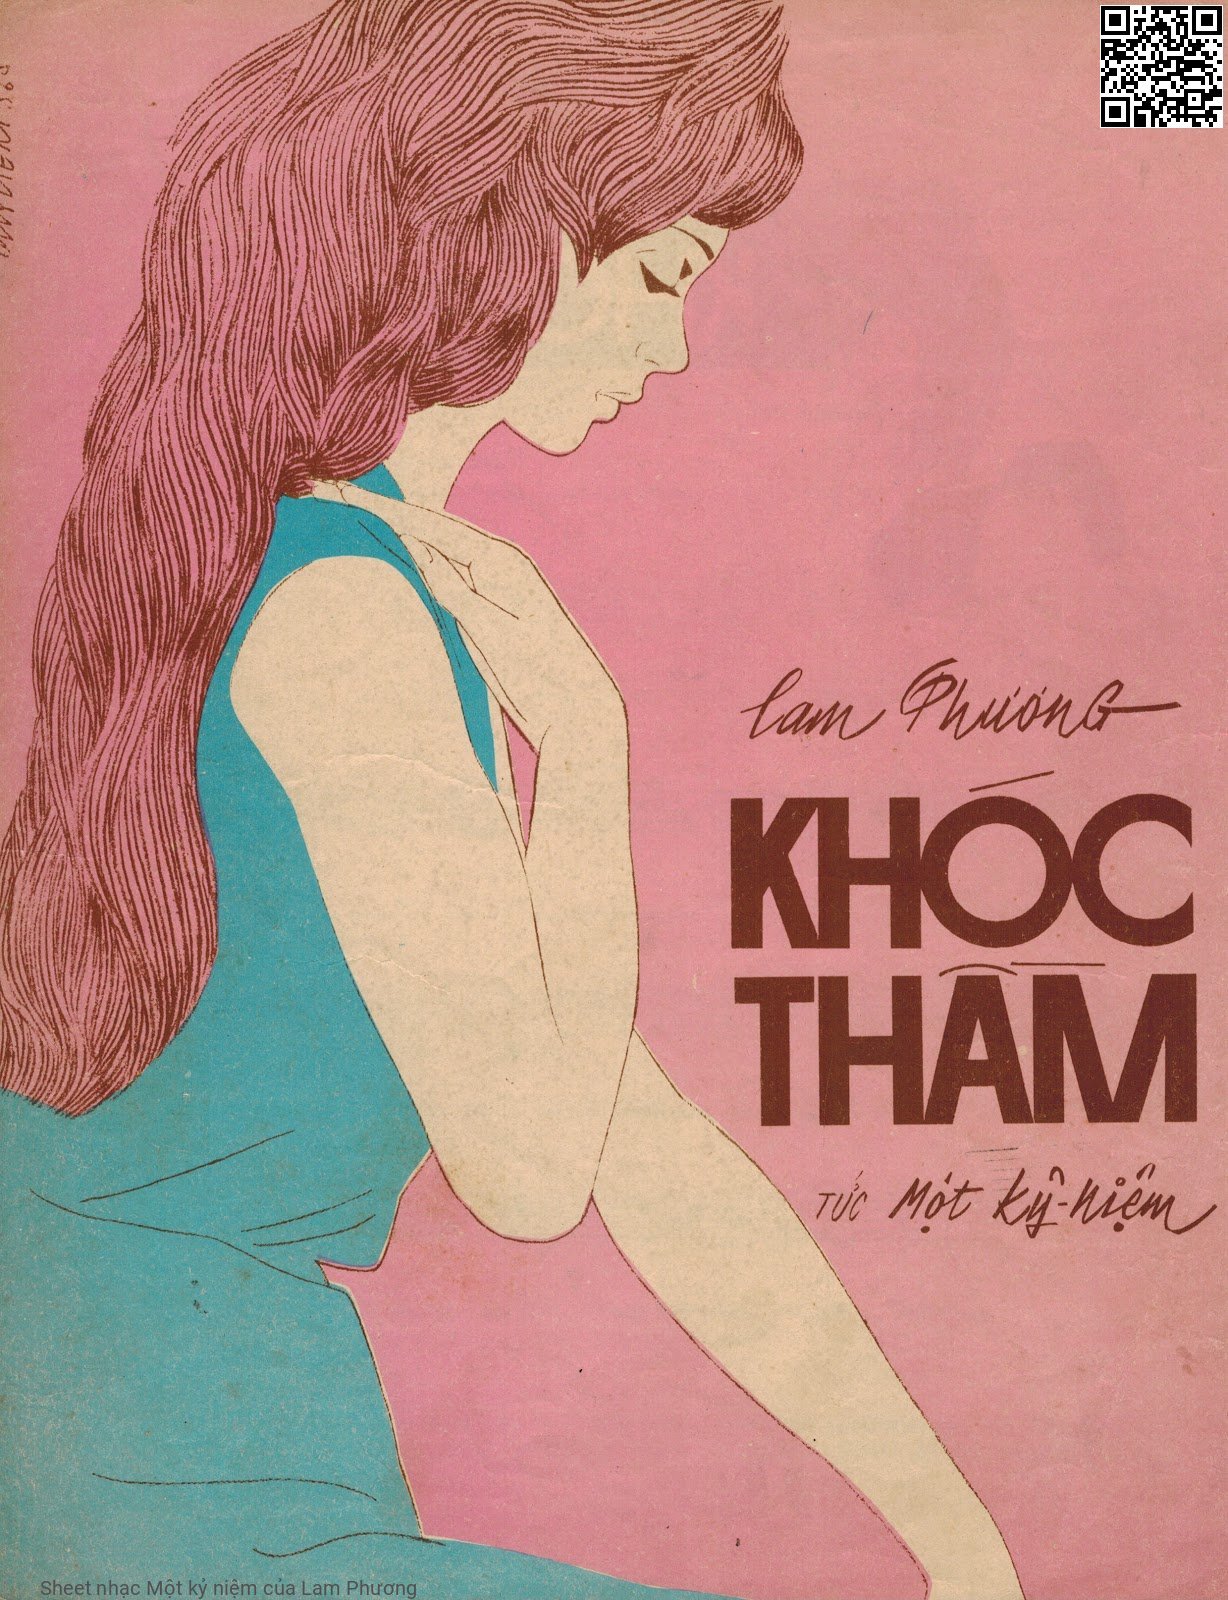 Sheet nhạc Một kỷ niệm - Lam Phương